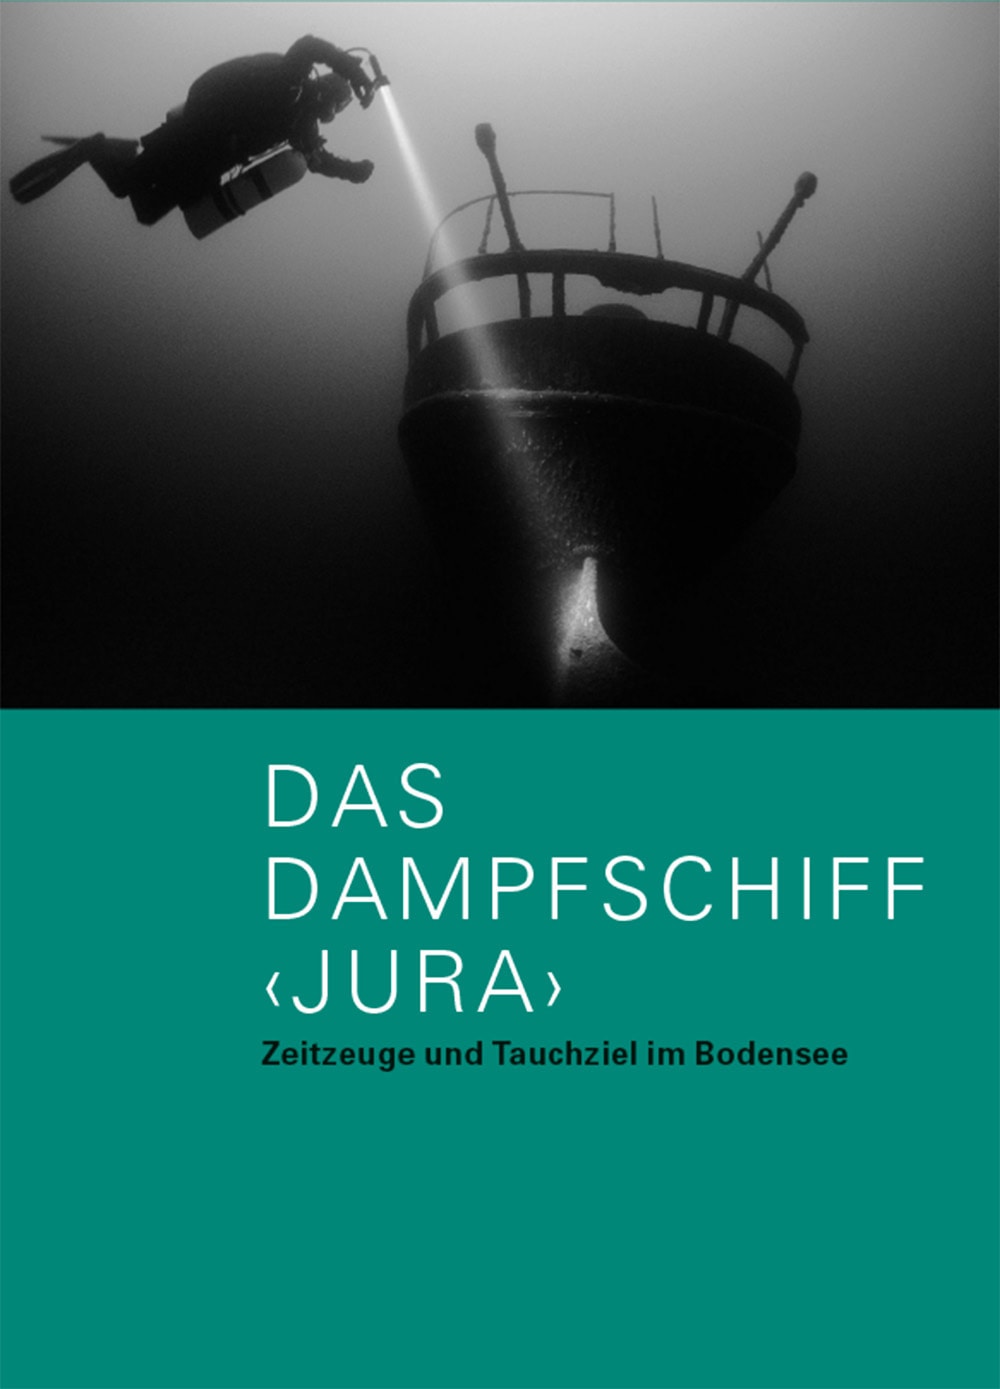 Titelseite der Publikation "Das Dampfschiff Jura"